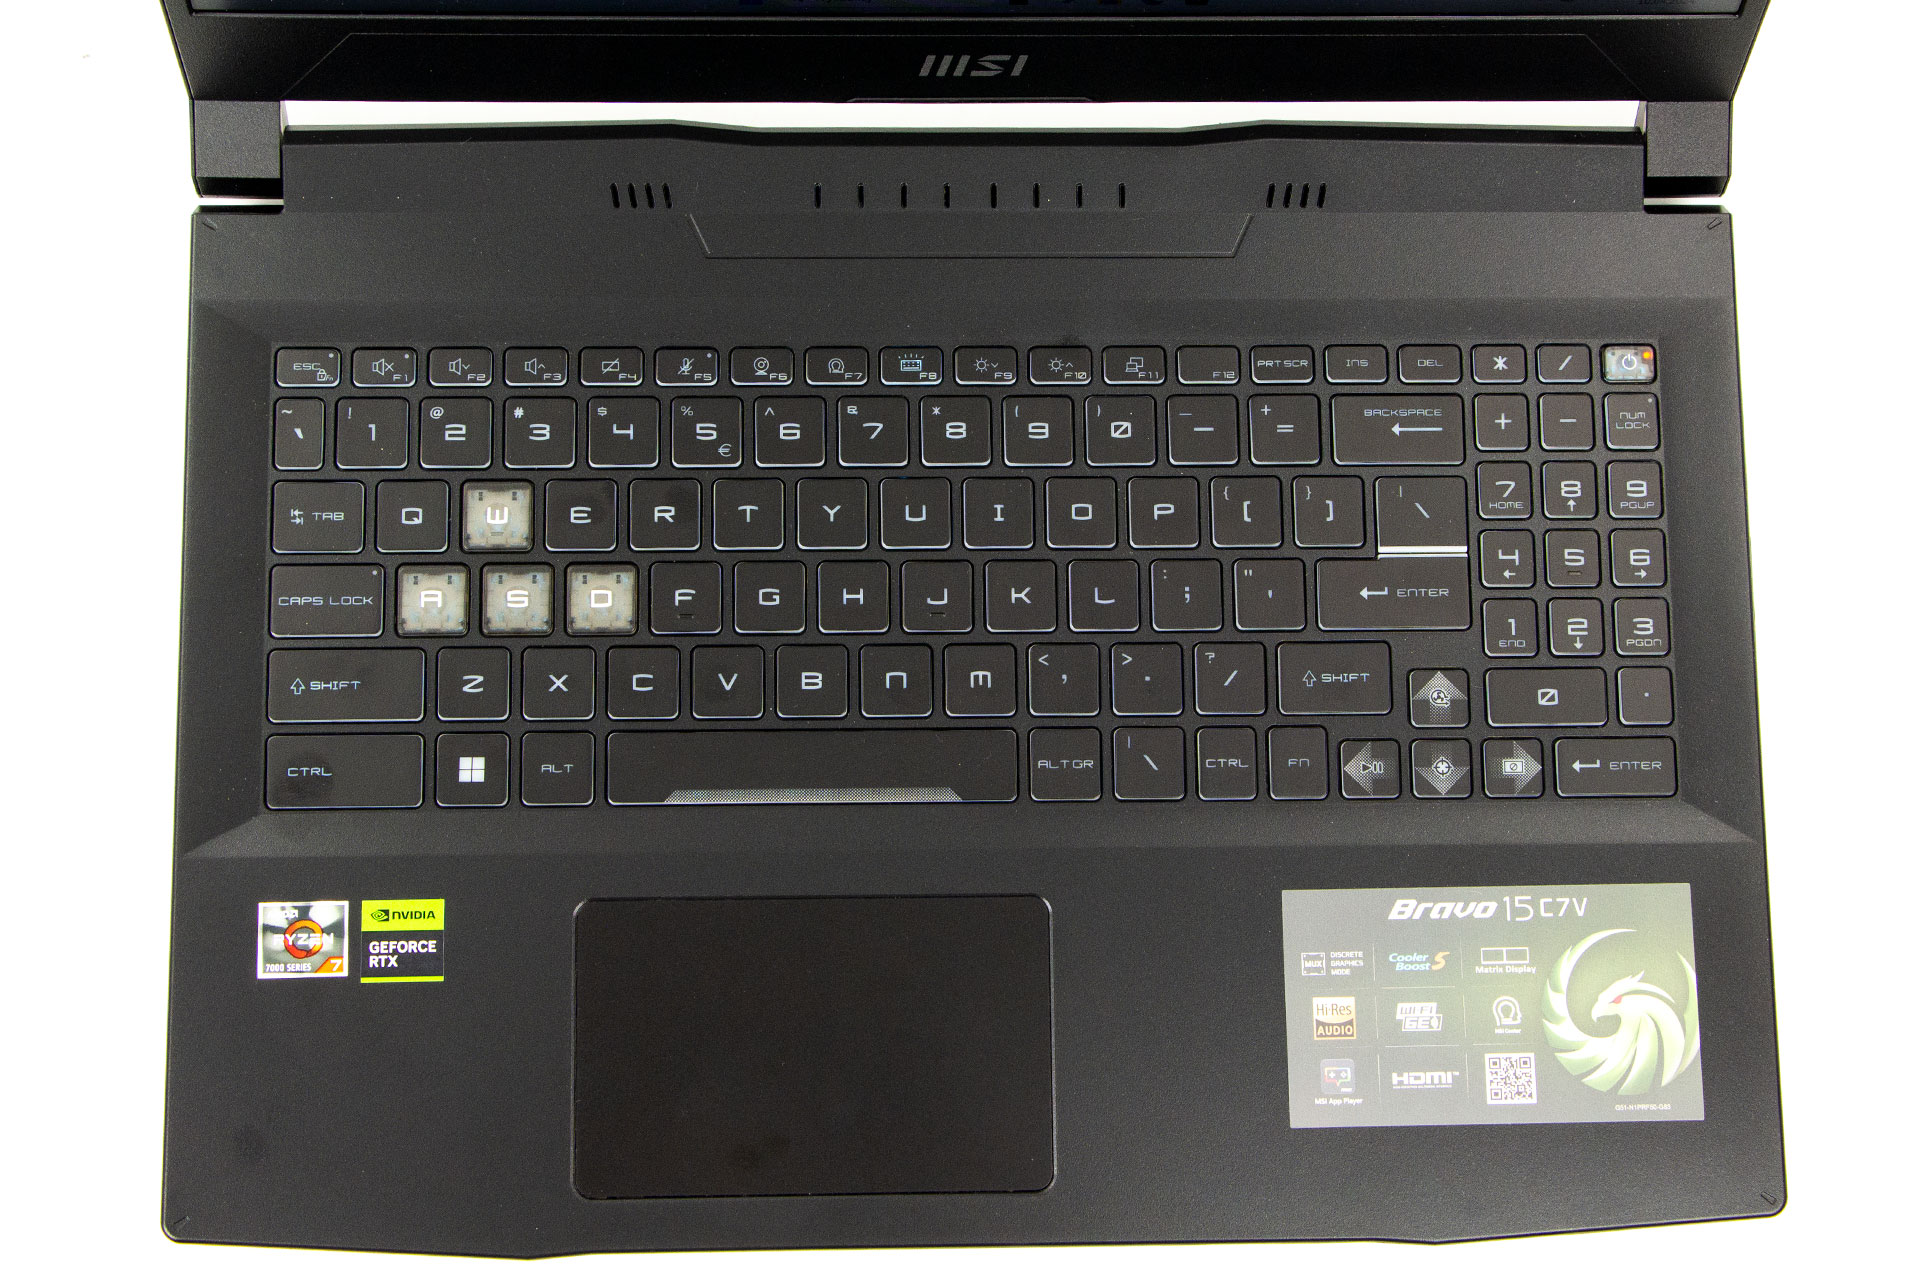 windows, microsoft, czy ten laptop zasługuje na brawa? recenzja dobrze wycenionego msi bravo 15 z rtx 4060